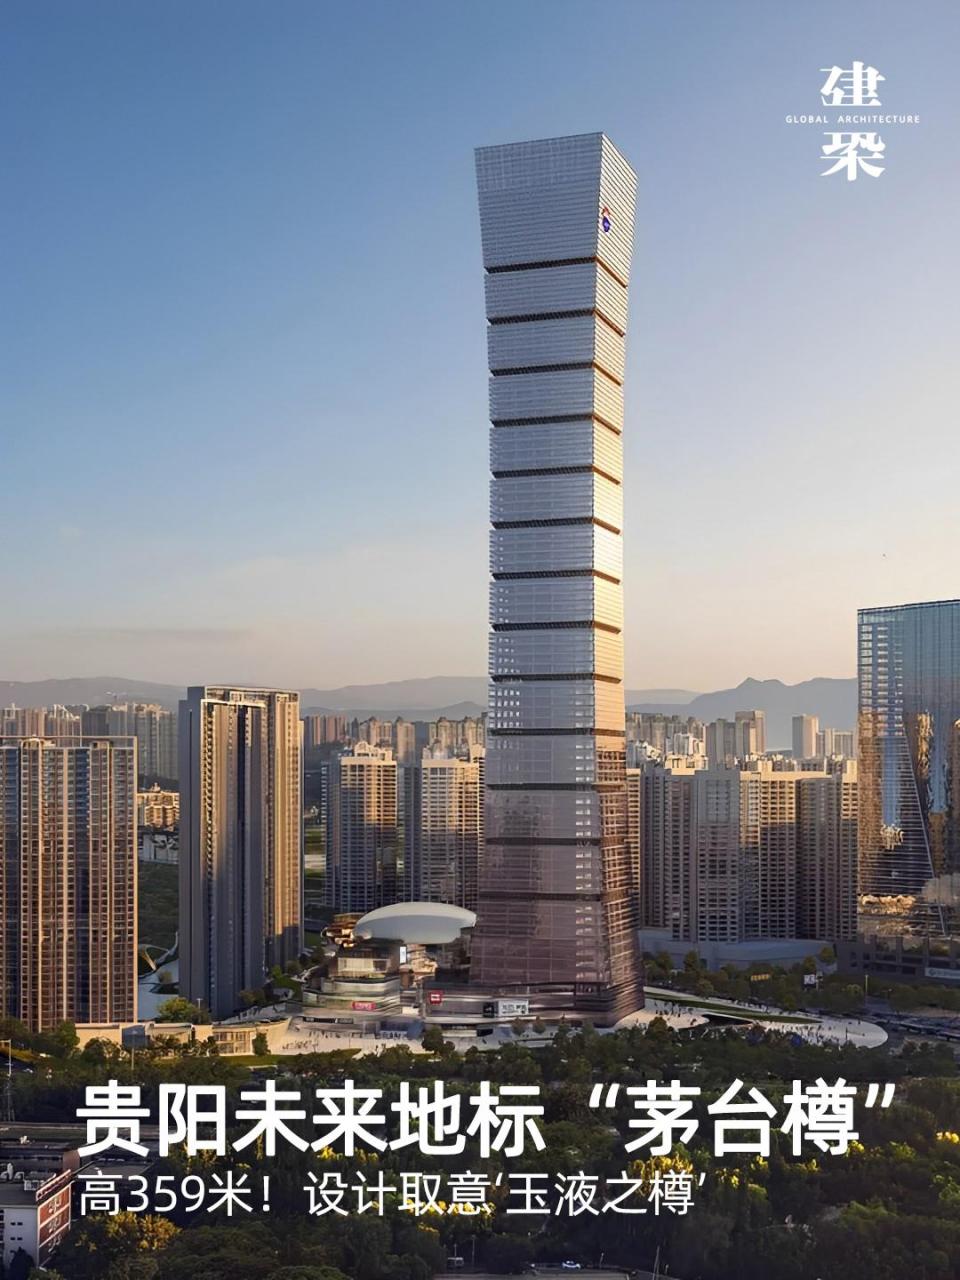 茅台广场位于贵州省贵阳市观山湖区,高359米,由中国建筑标准设计研究